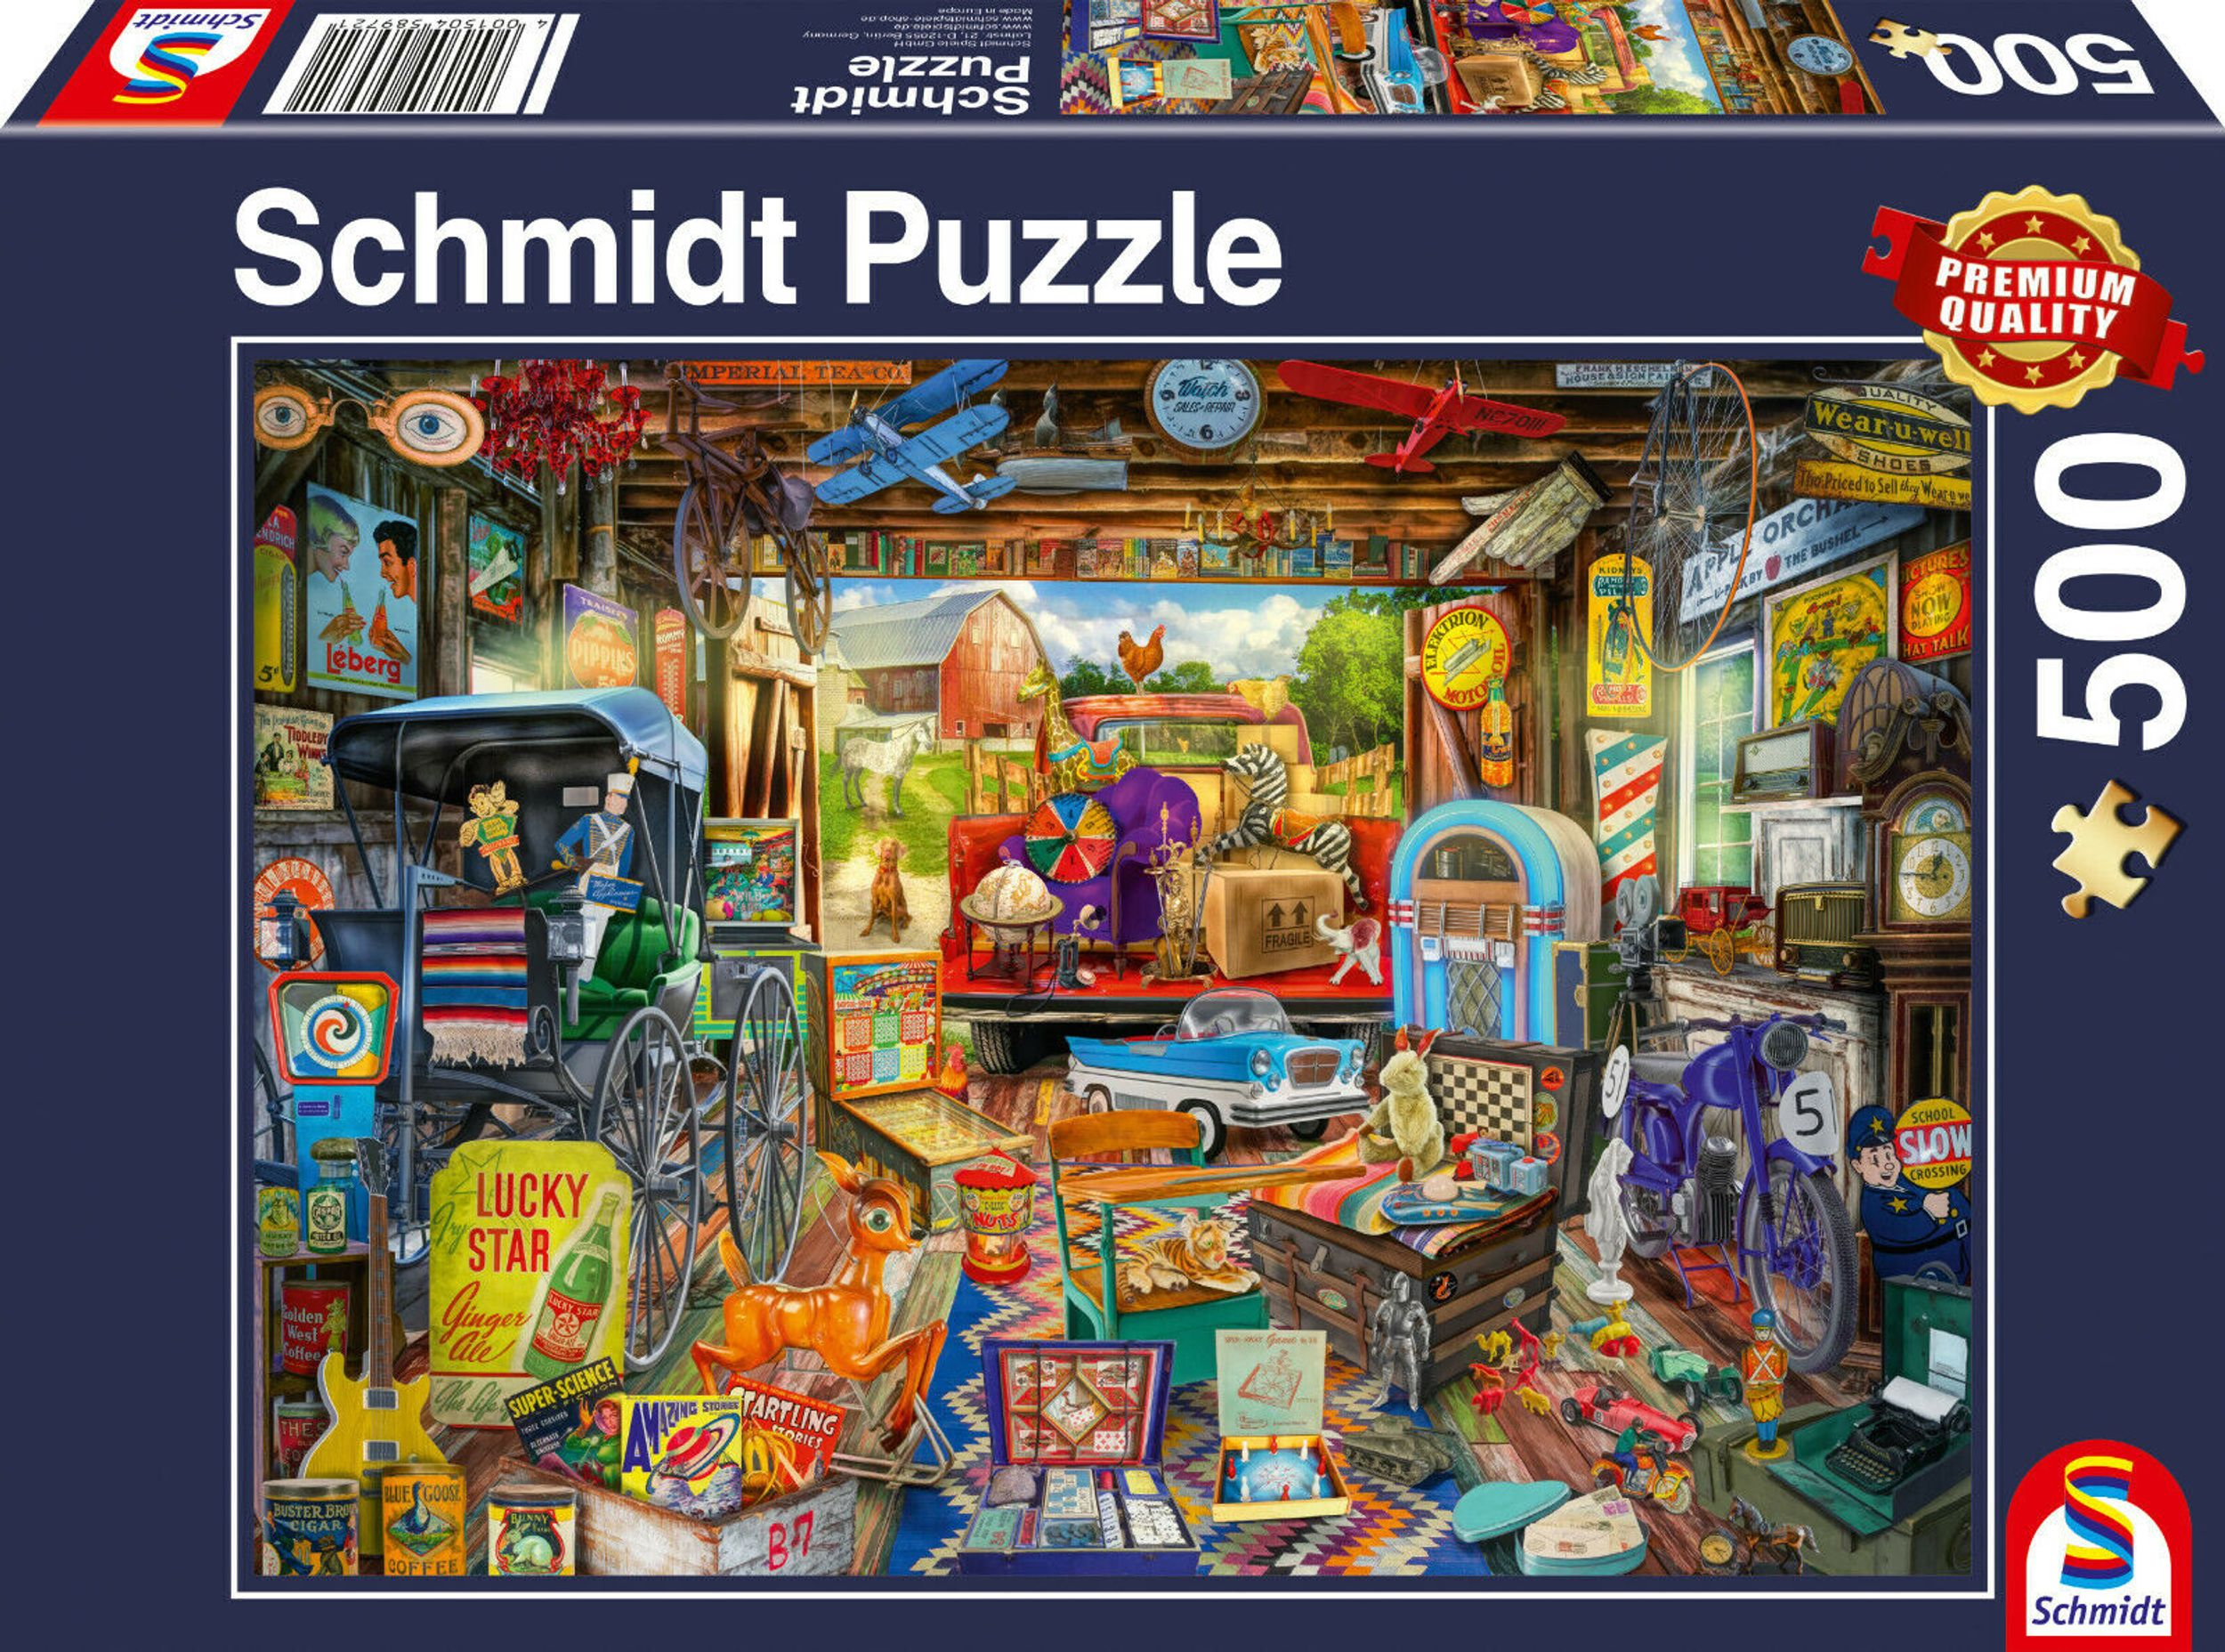 SPIELE Puzzle Garagen-Flohmarkt SCHMIDT